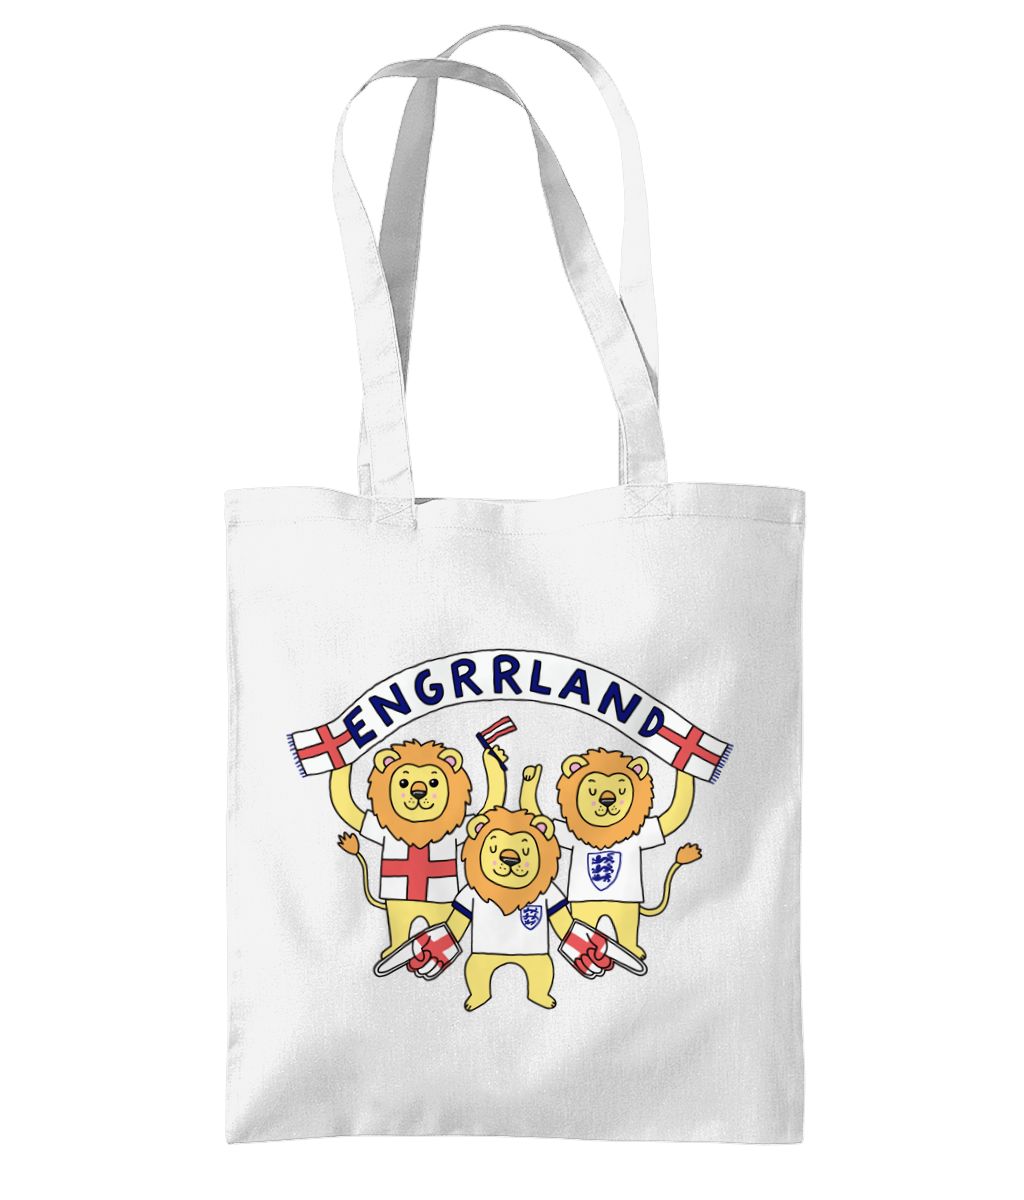 Engrrland Design 1 - Organic Premium Cotton Tote Bag